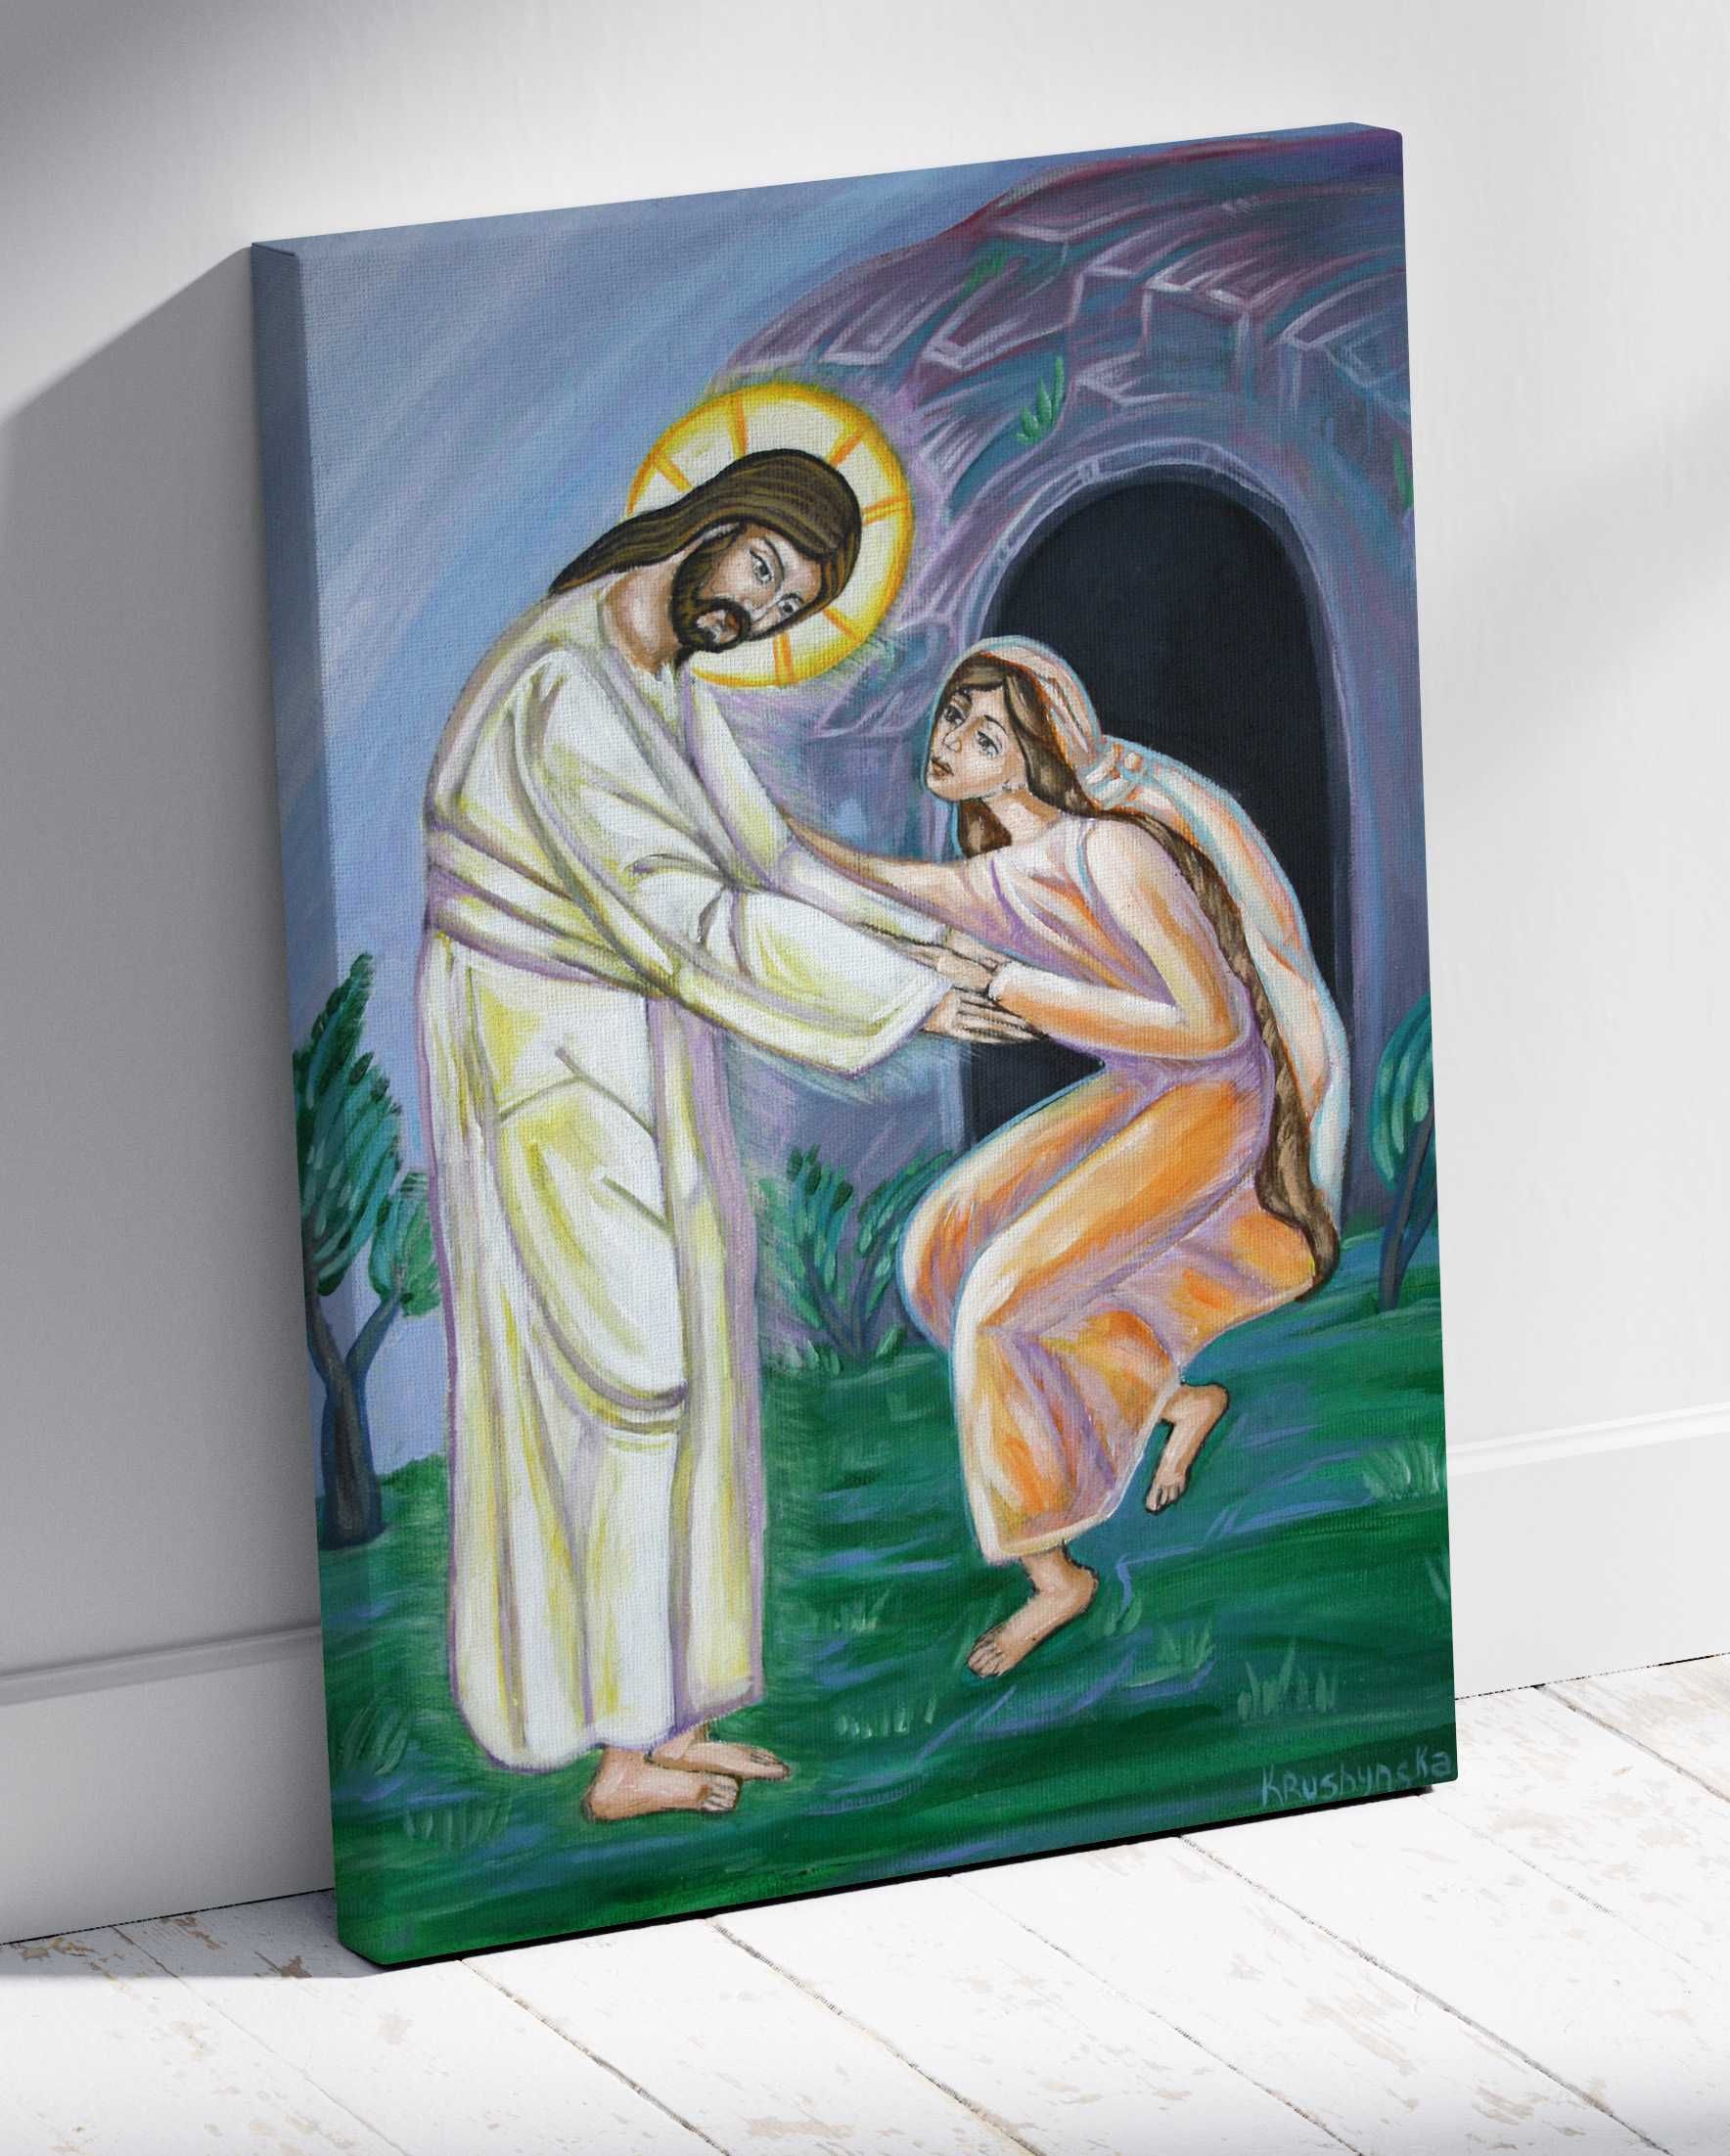 Obraz religijny na plótnie "Jezus Chrystus Zmartwychwstały".